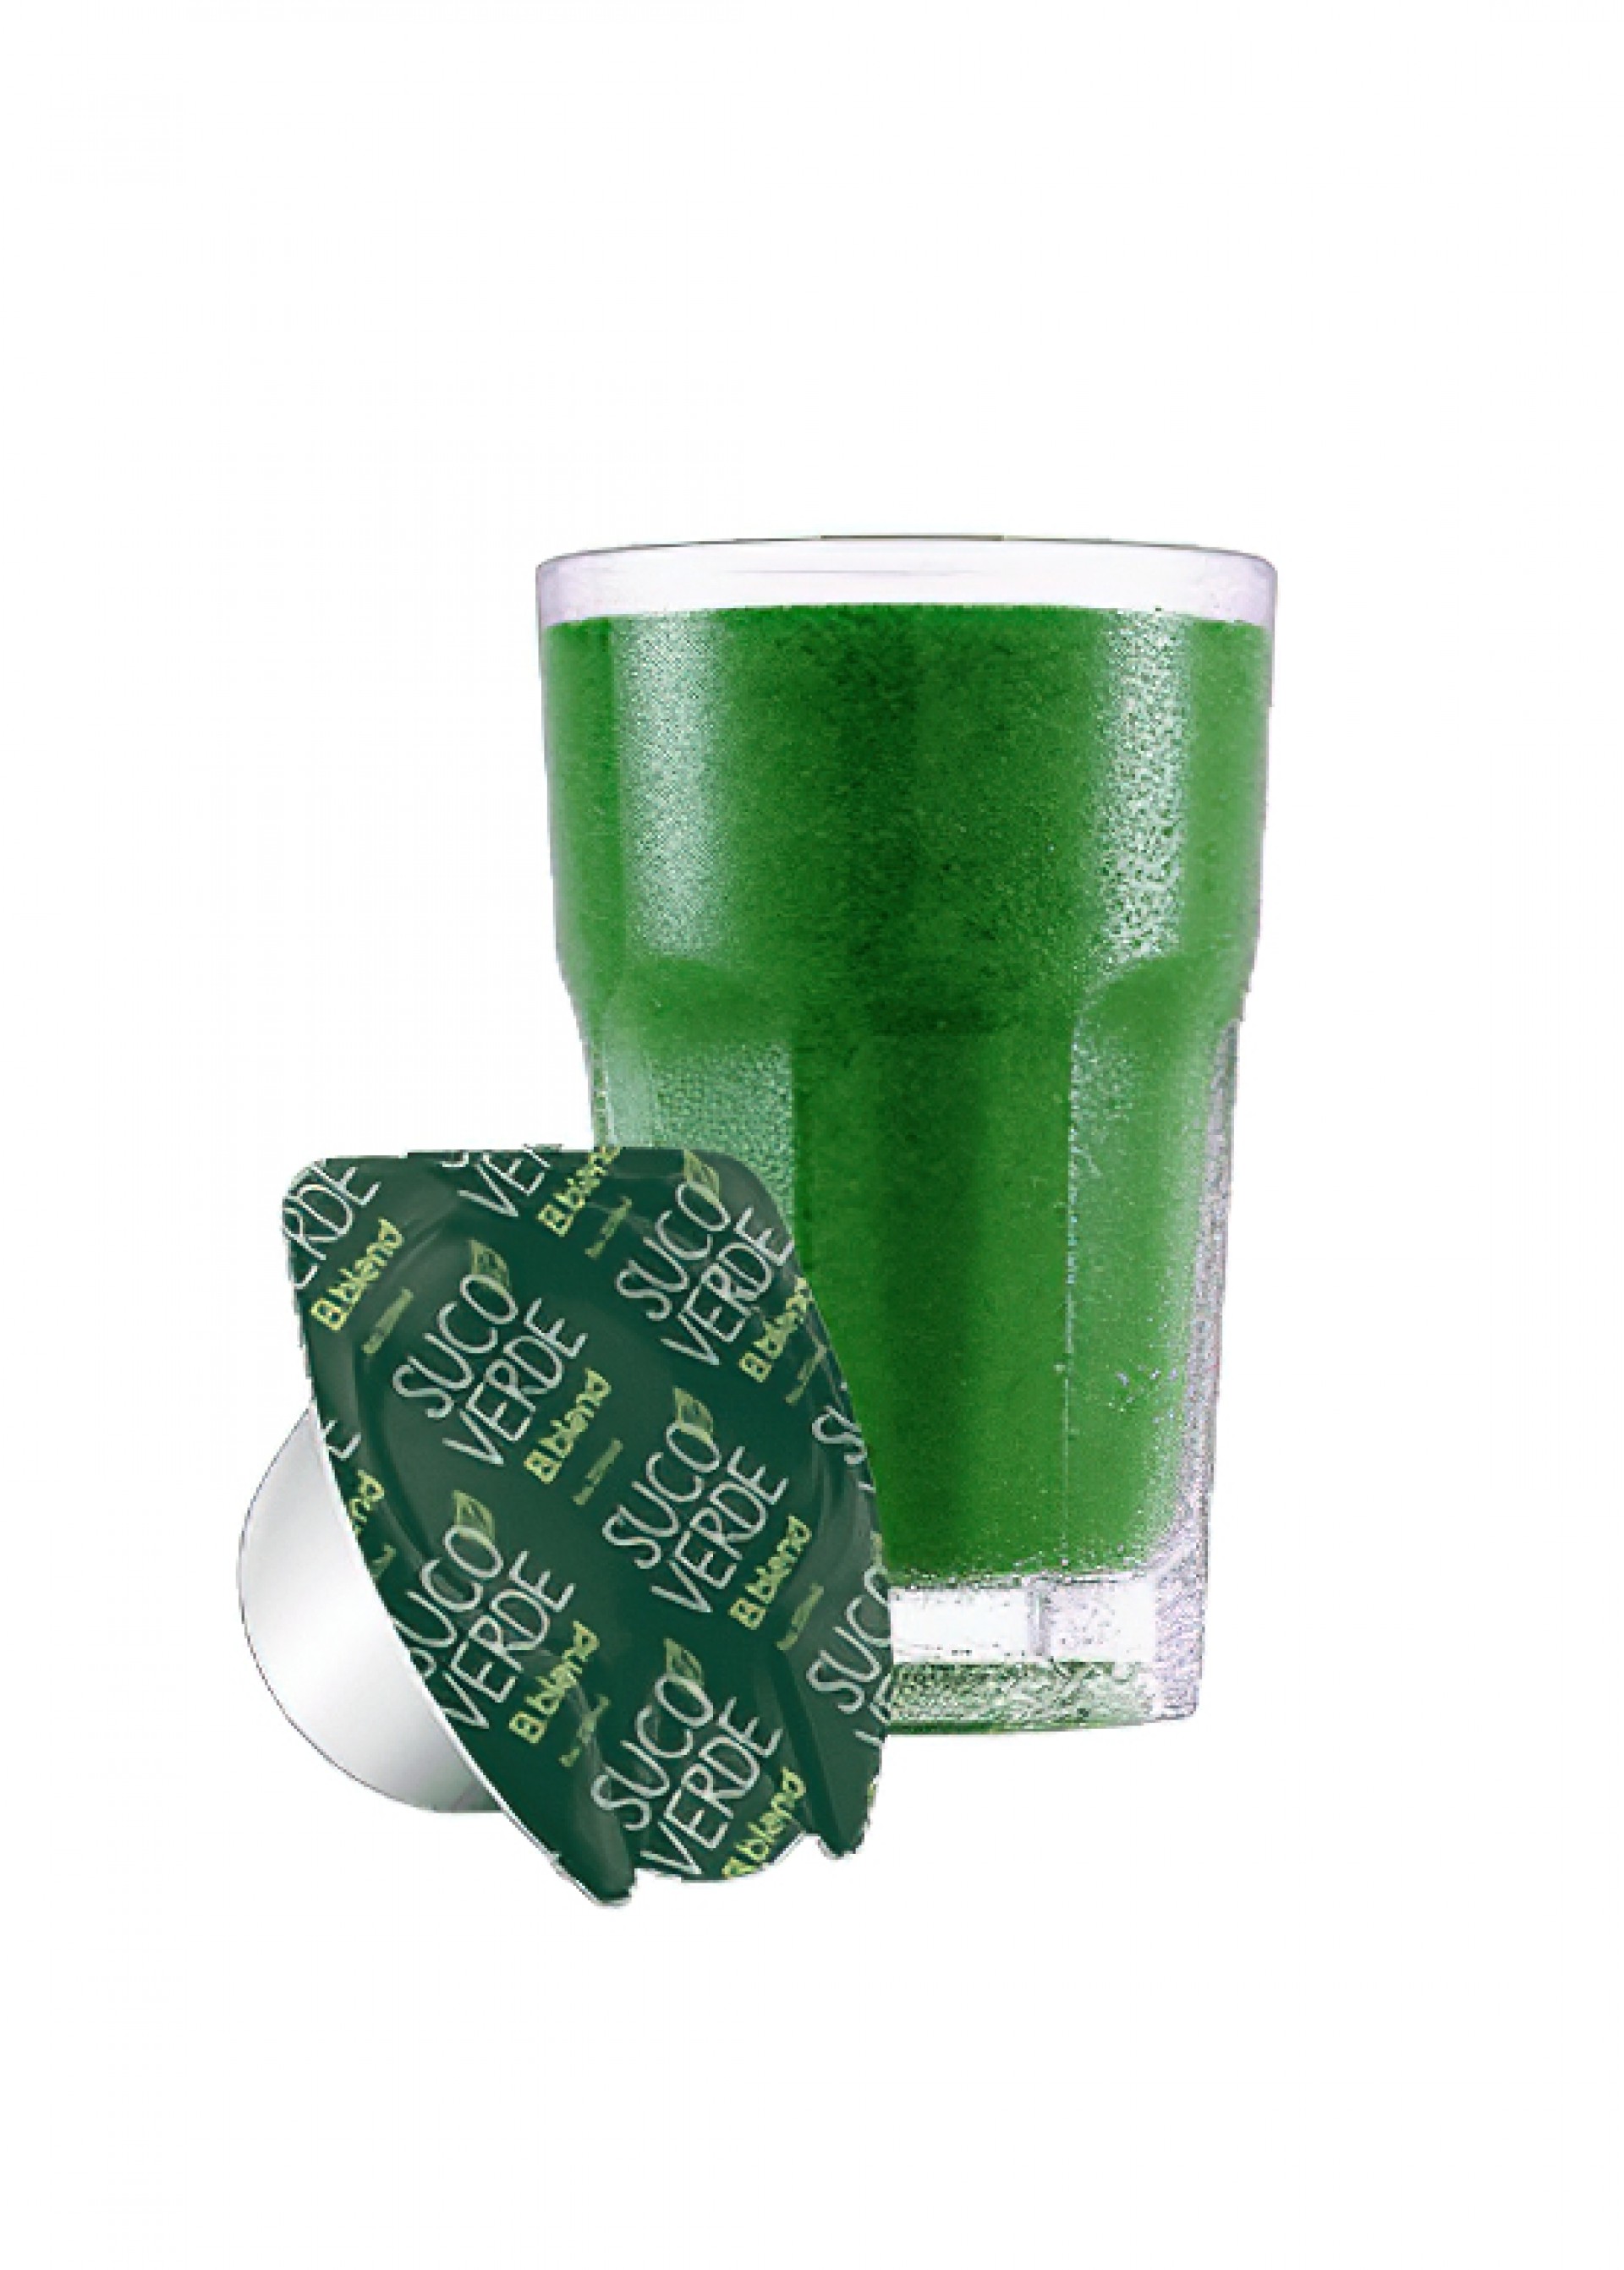 O suco verde da B.blend, plataforma de bebidas em cápsulas da Brastemp, é feito com couve, limão e água de coco. Não tem glúten, açúcares ou conservantes